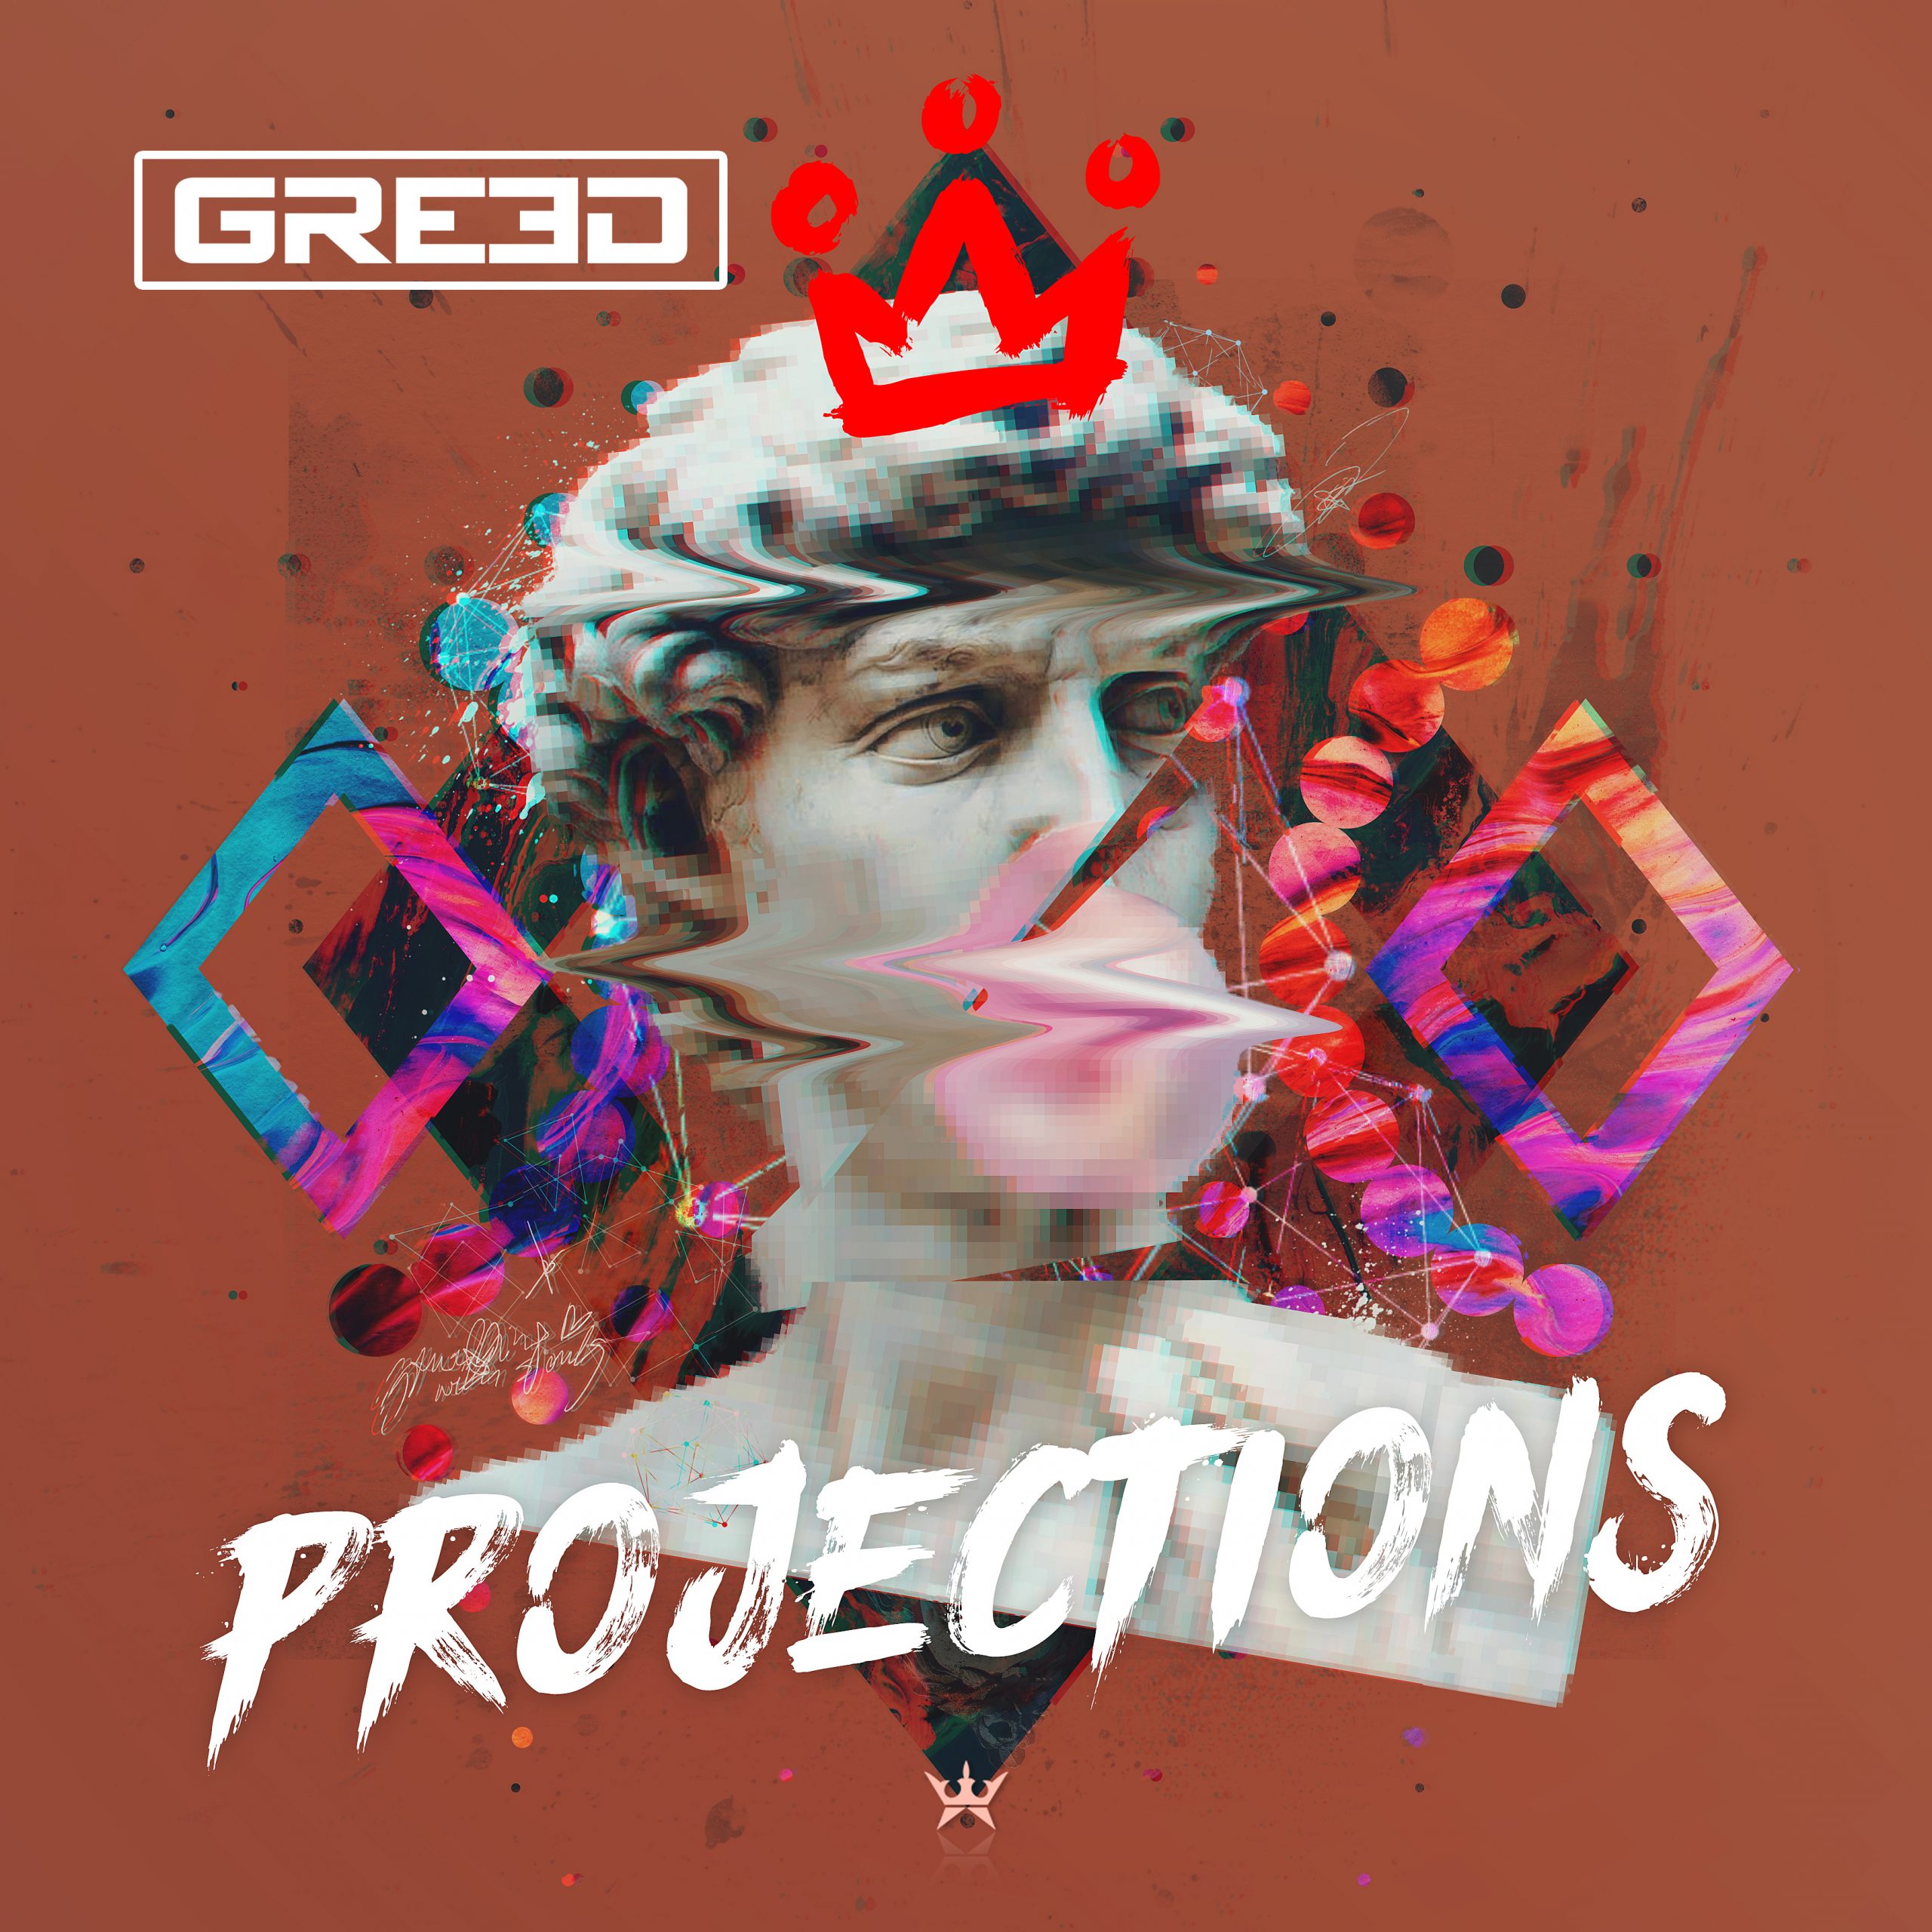 GR33D projections album art cover design